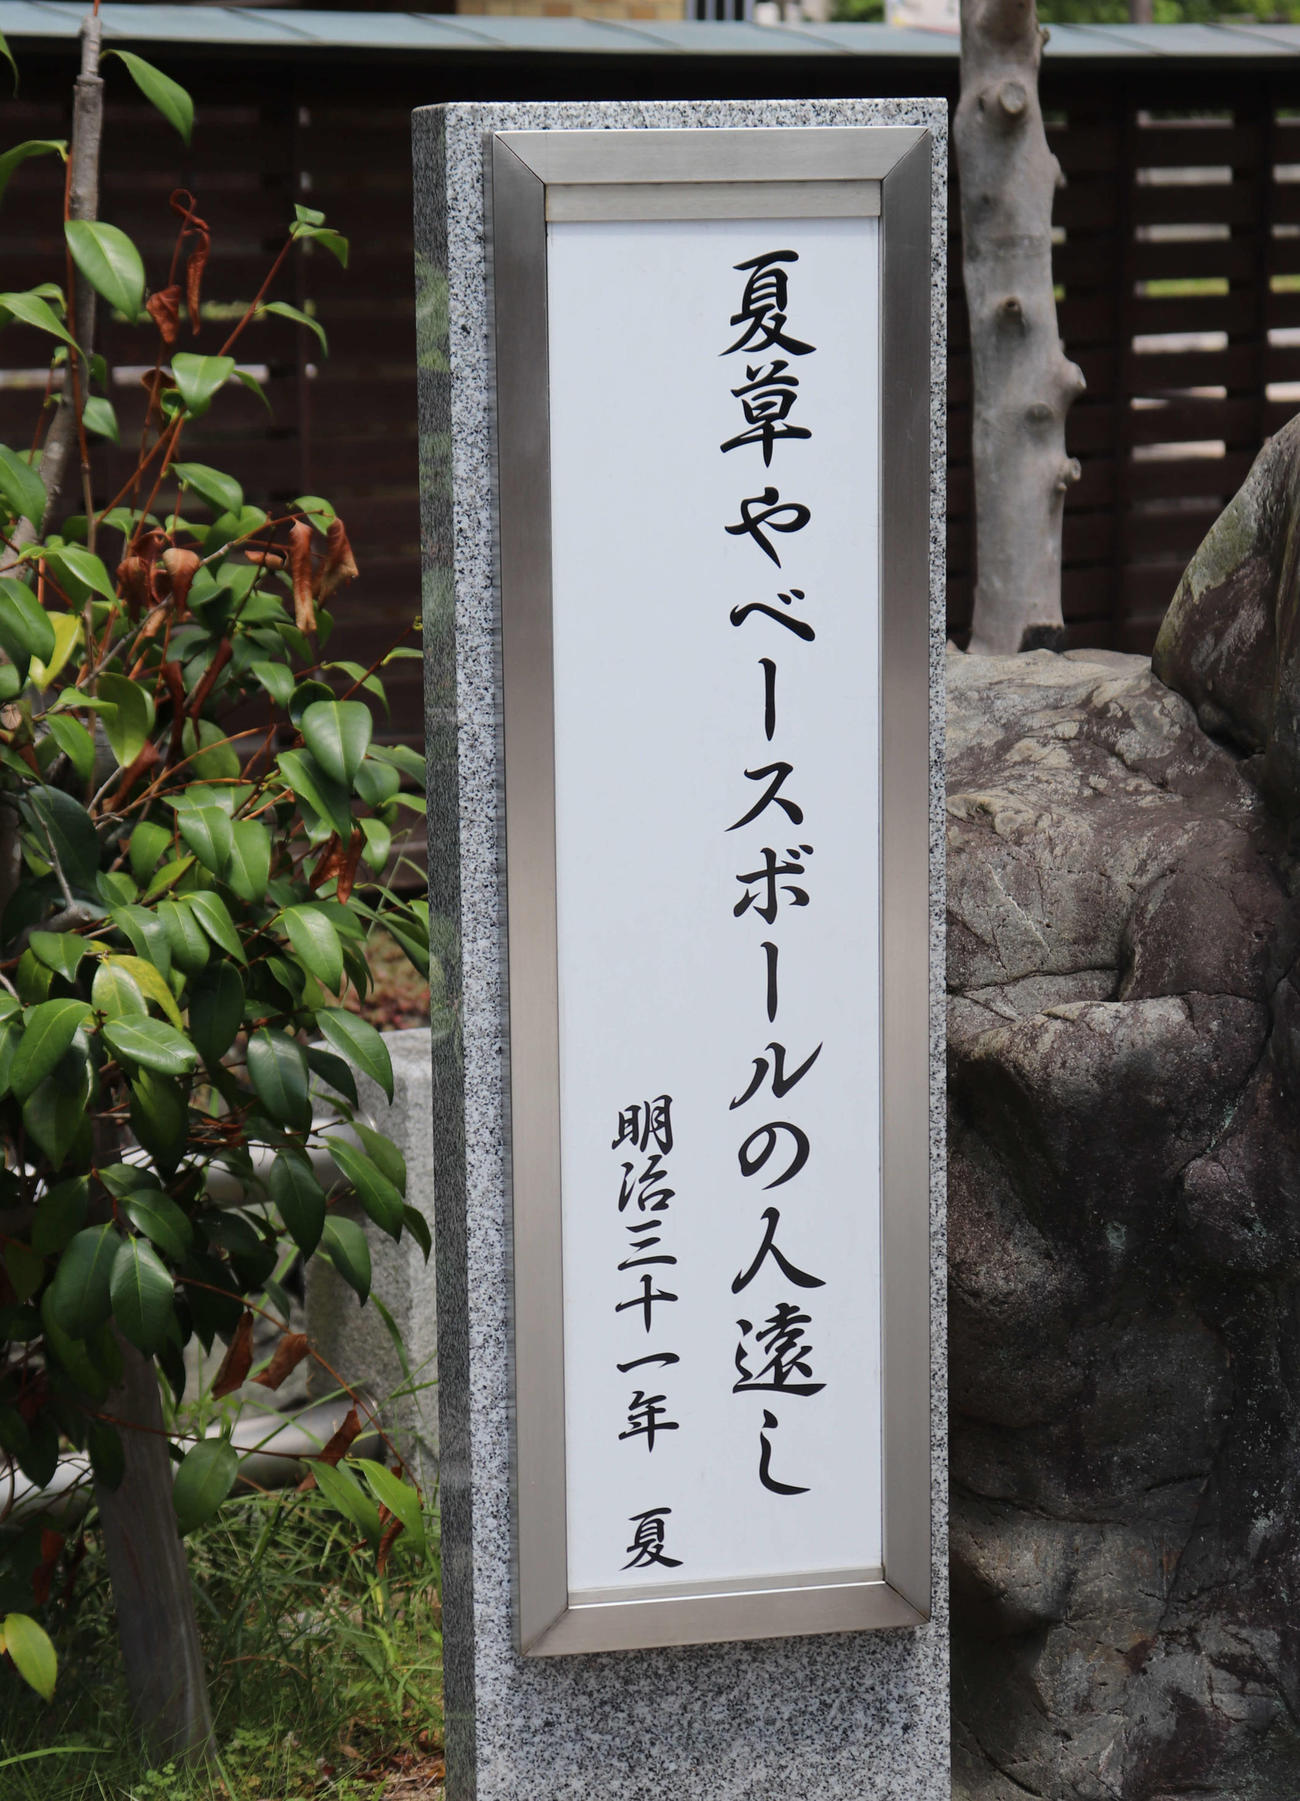 銅像の横に建つ正岡子規の句碑